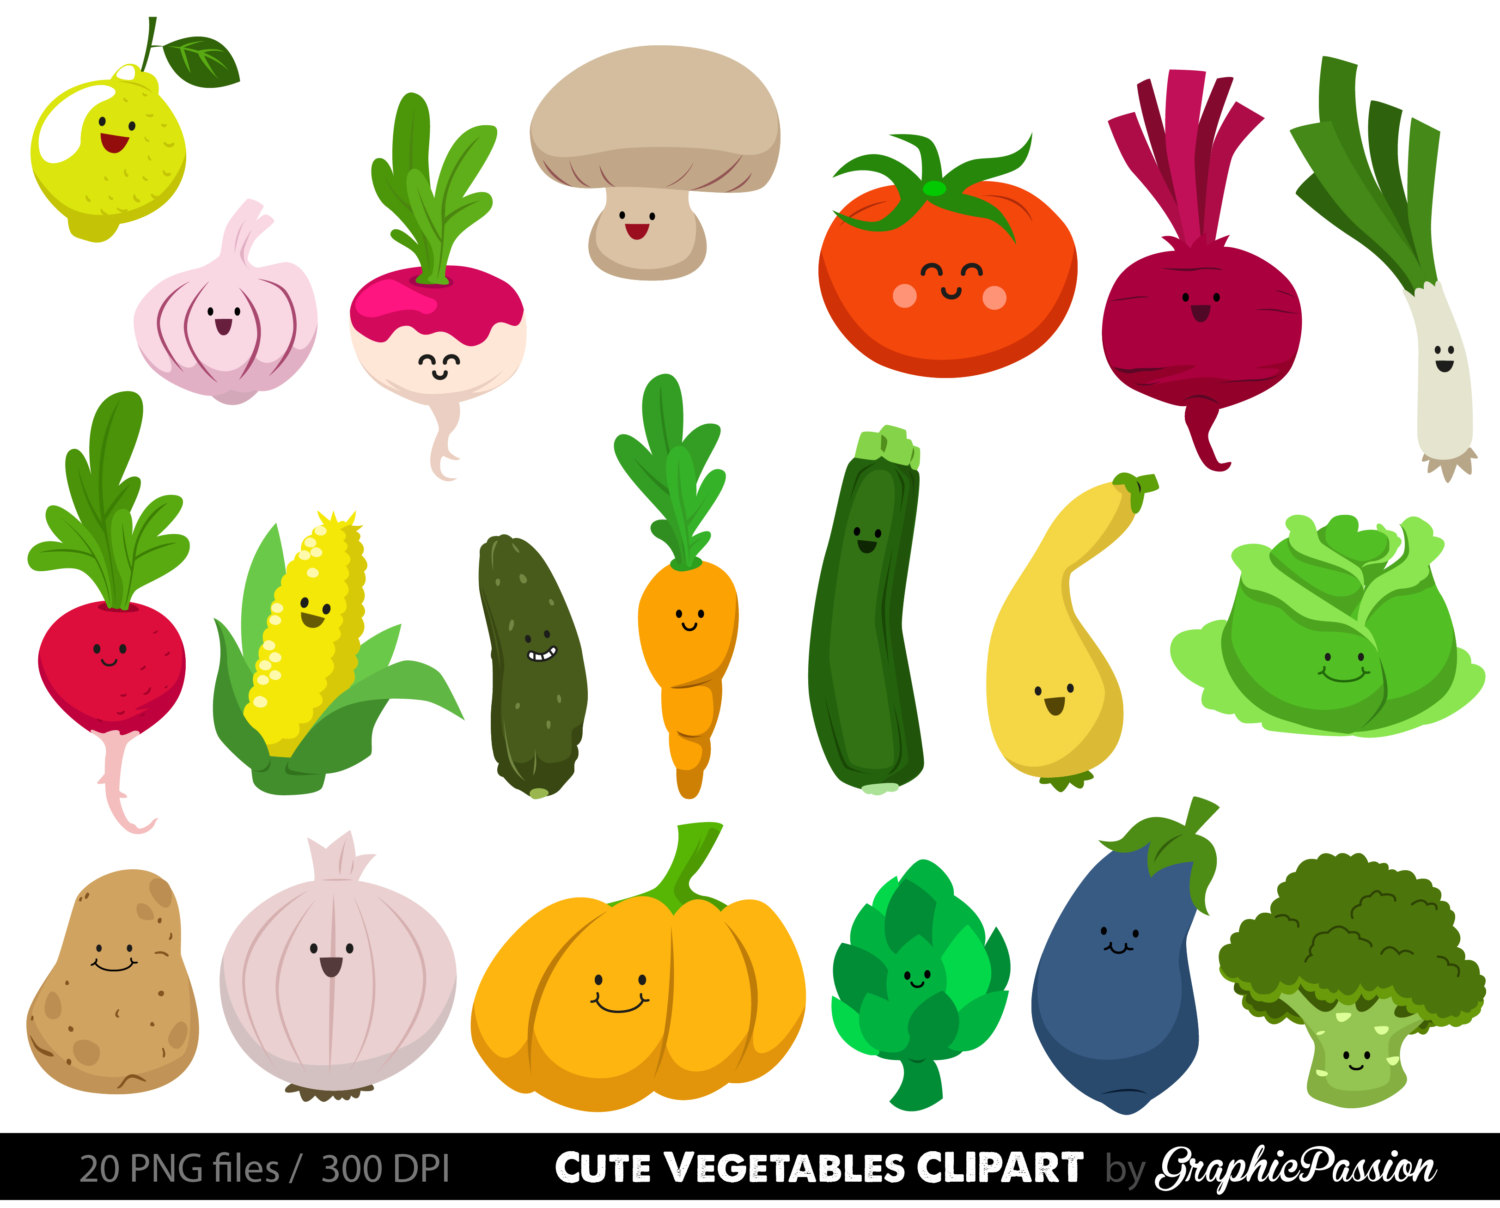 Vegetables clipart digital ve